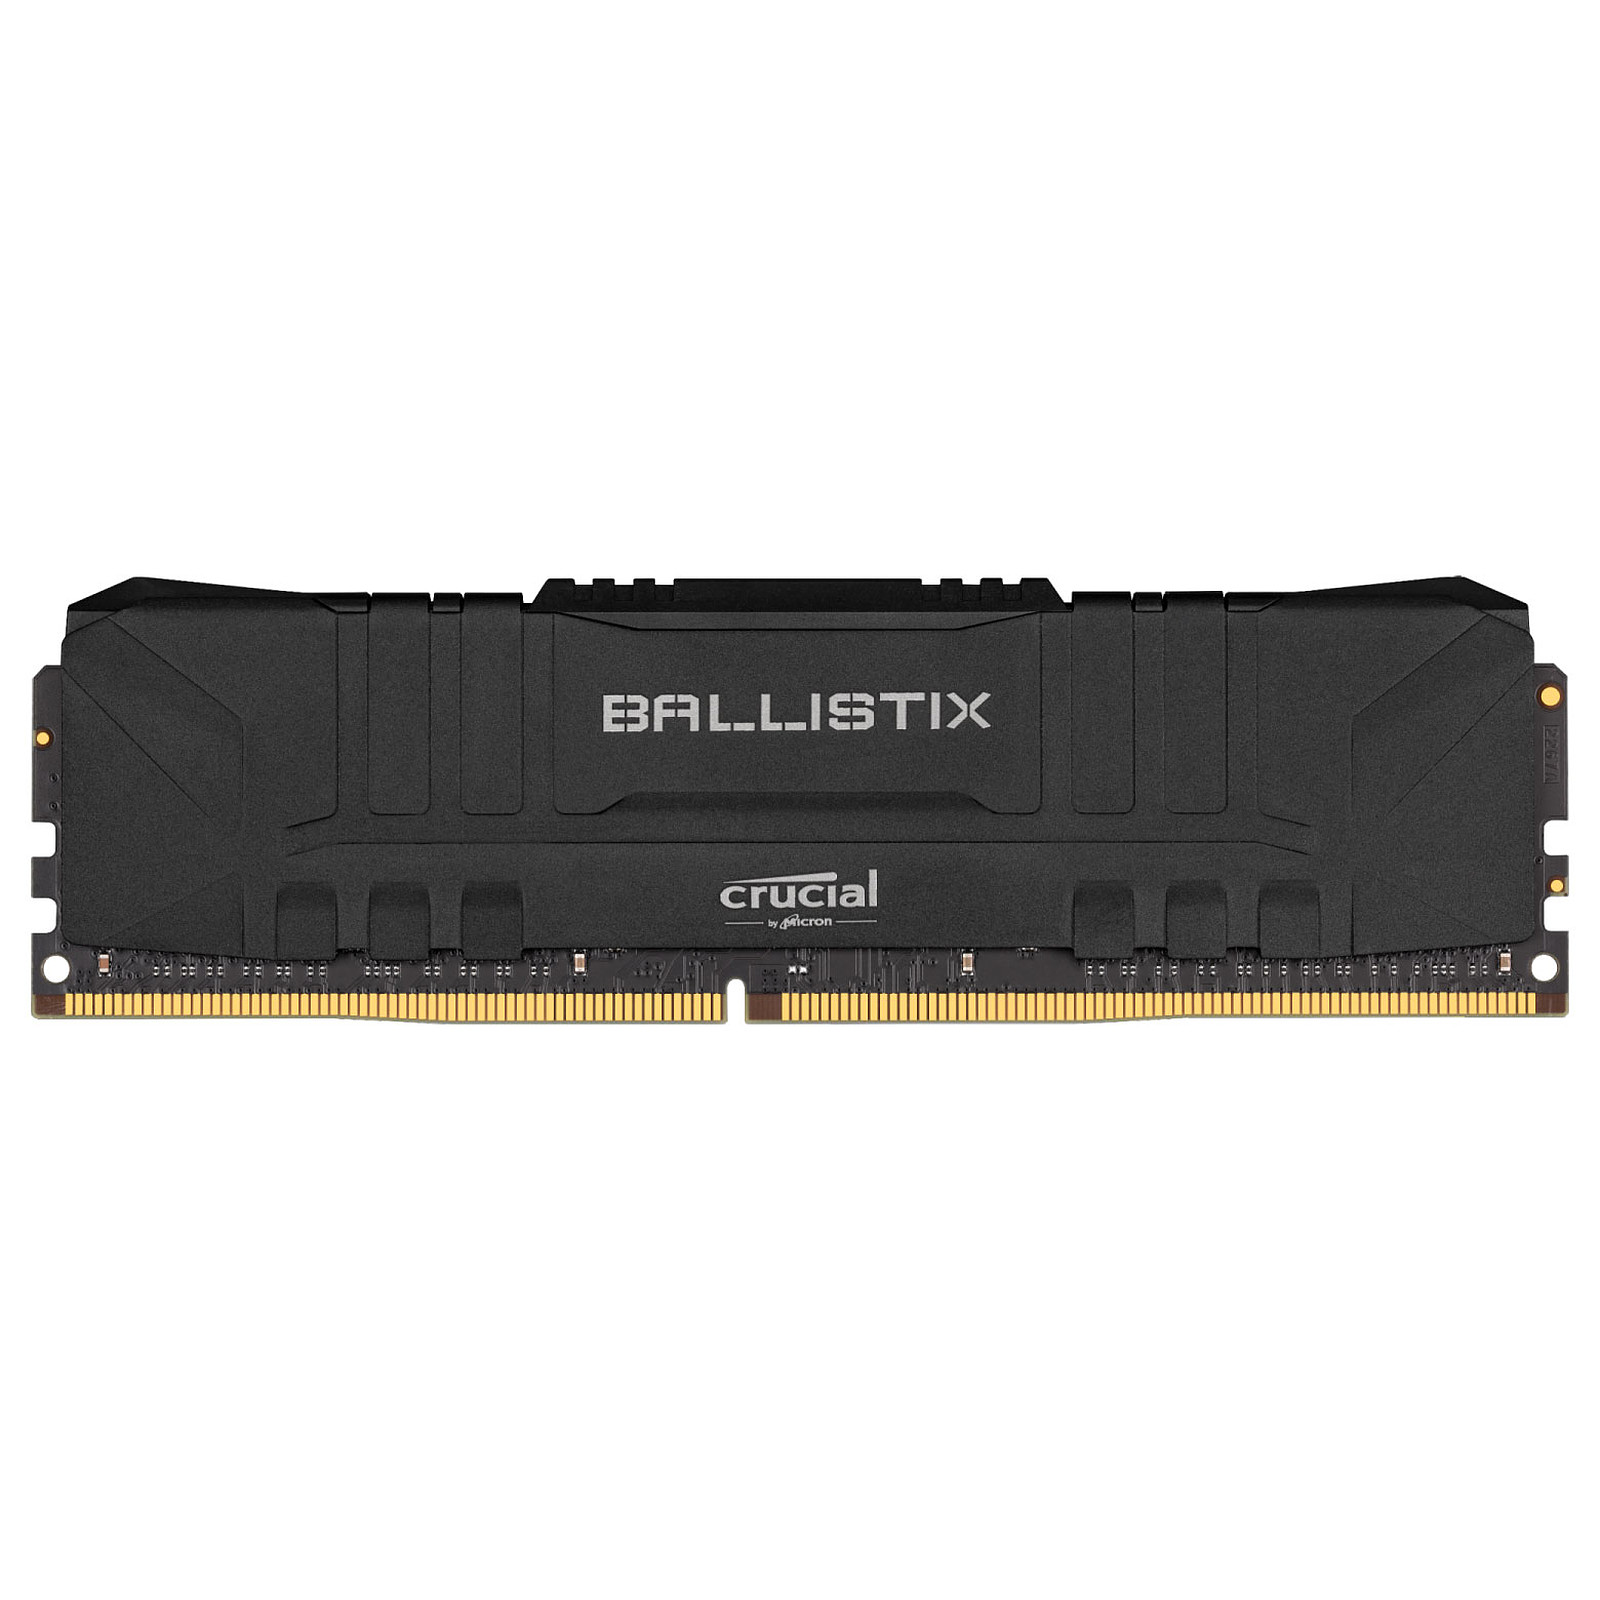 RAM BALLISTIX 32GB 3200MHZ Algérie El Assli Hi-Tech